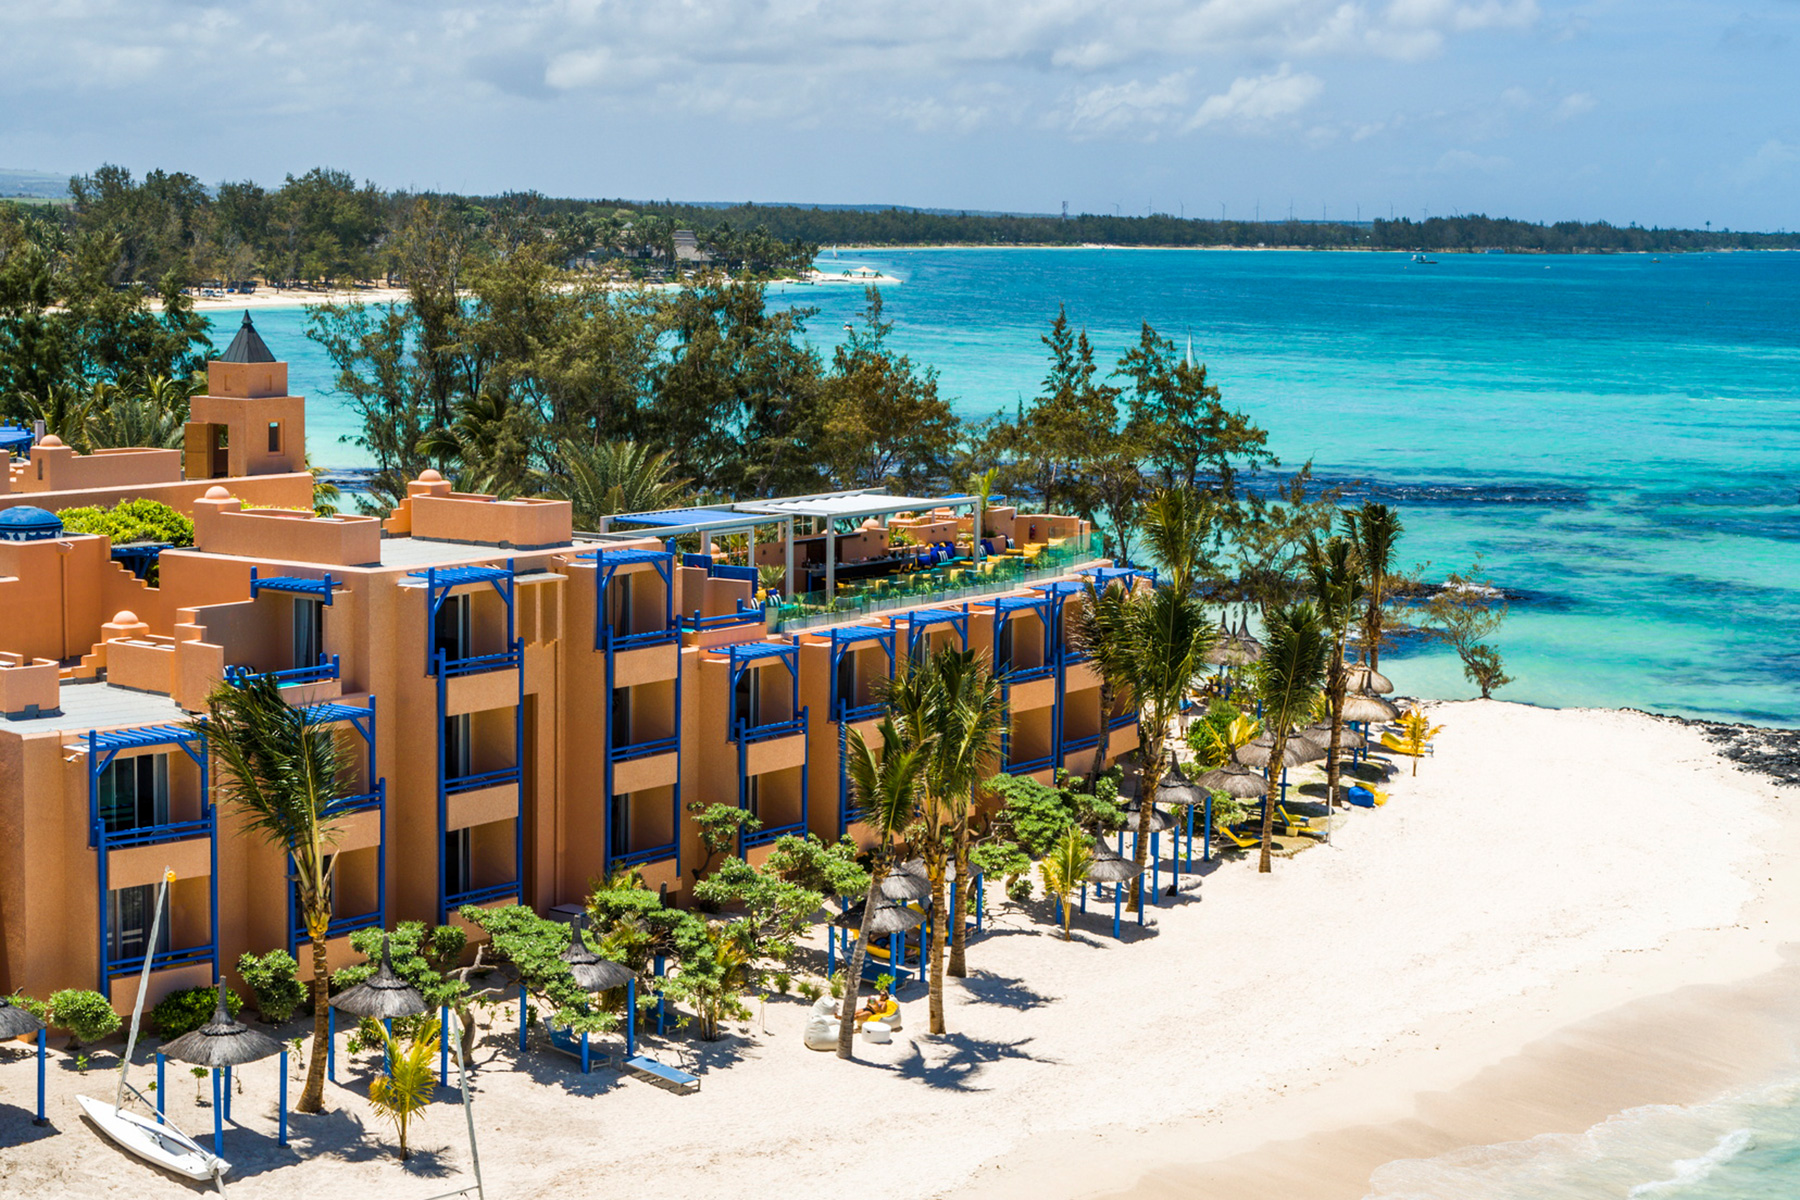 Luxushotel liegt auf Strandzunge mit Palmen